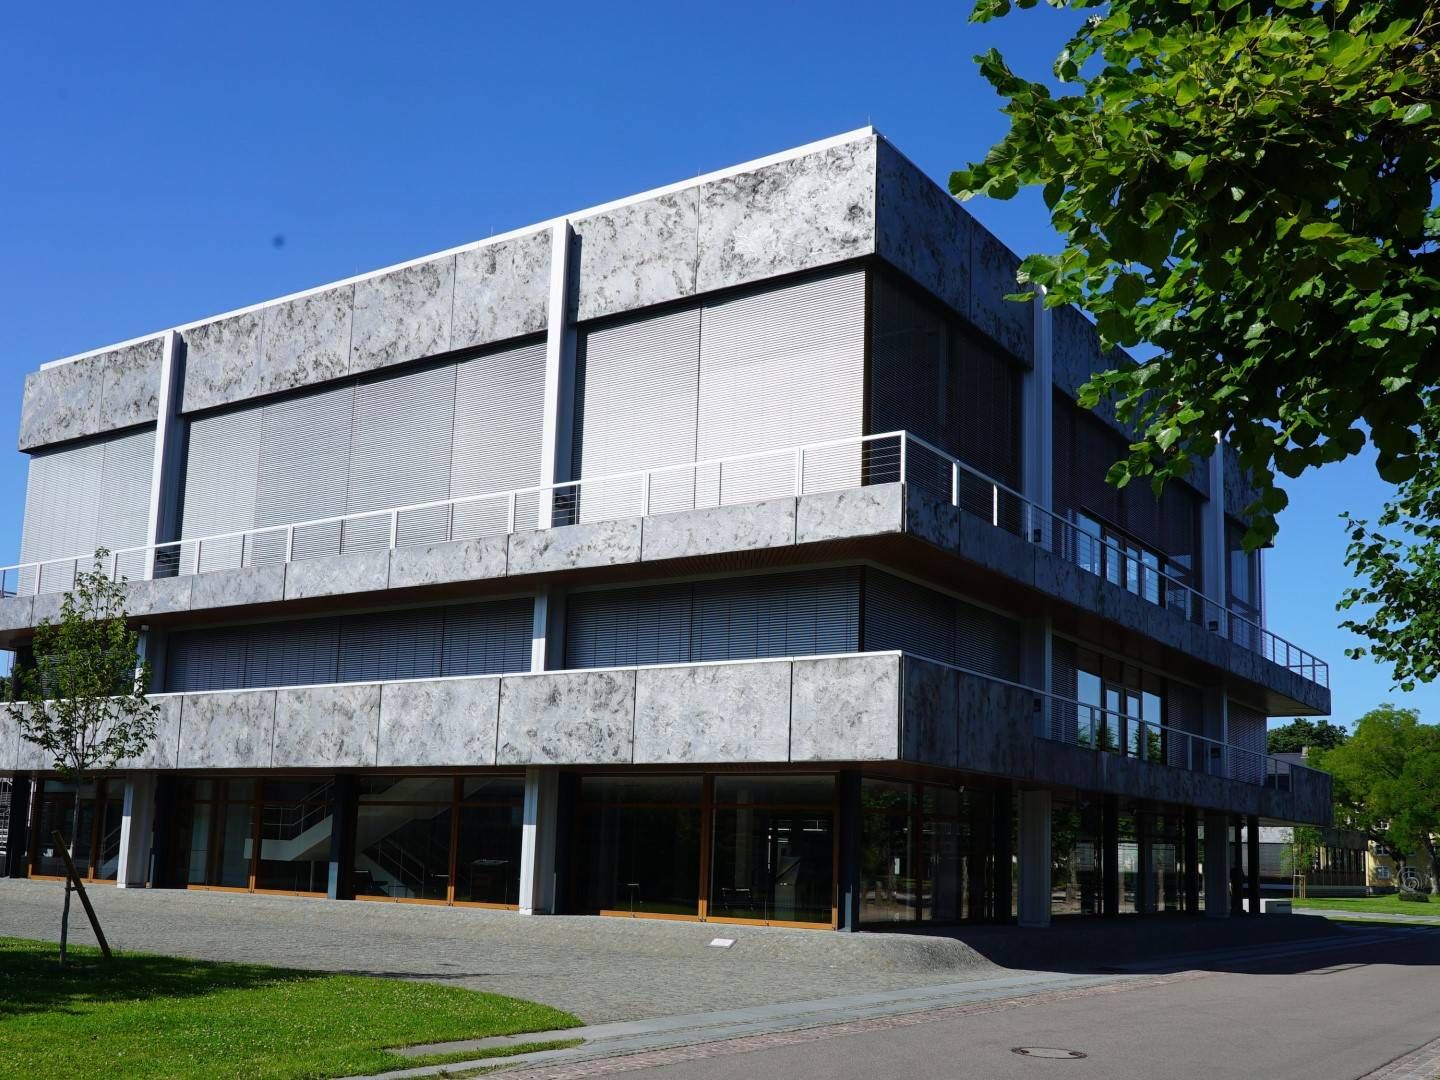 Das bundesverfassungsgericht in Karlsruhe | Foto: picture alliance/rtn - radio tele nord